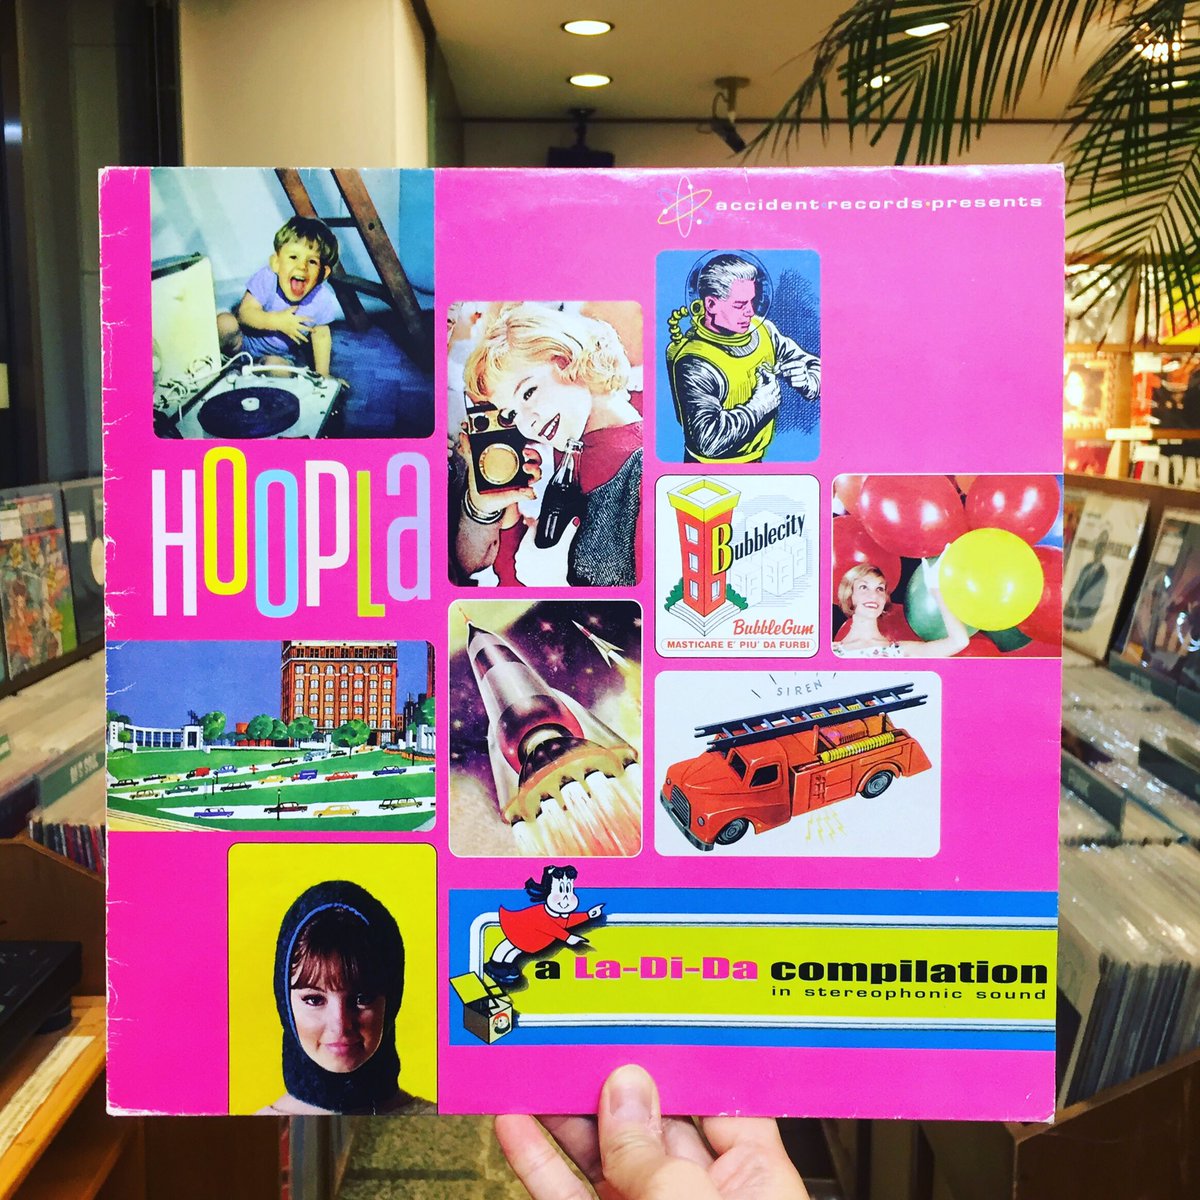 ココナッツディスク吉祥寺店y Hoopla A La Di Da Compilation ロリポップソニック Exotic Lollipop が収録されている事で有名な インディポップレーベルla Di Daがリリースしたコンピカセット の 嬉しいlp化盤 ヴァイナルレコードでロリポップを